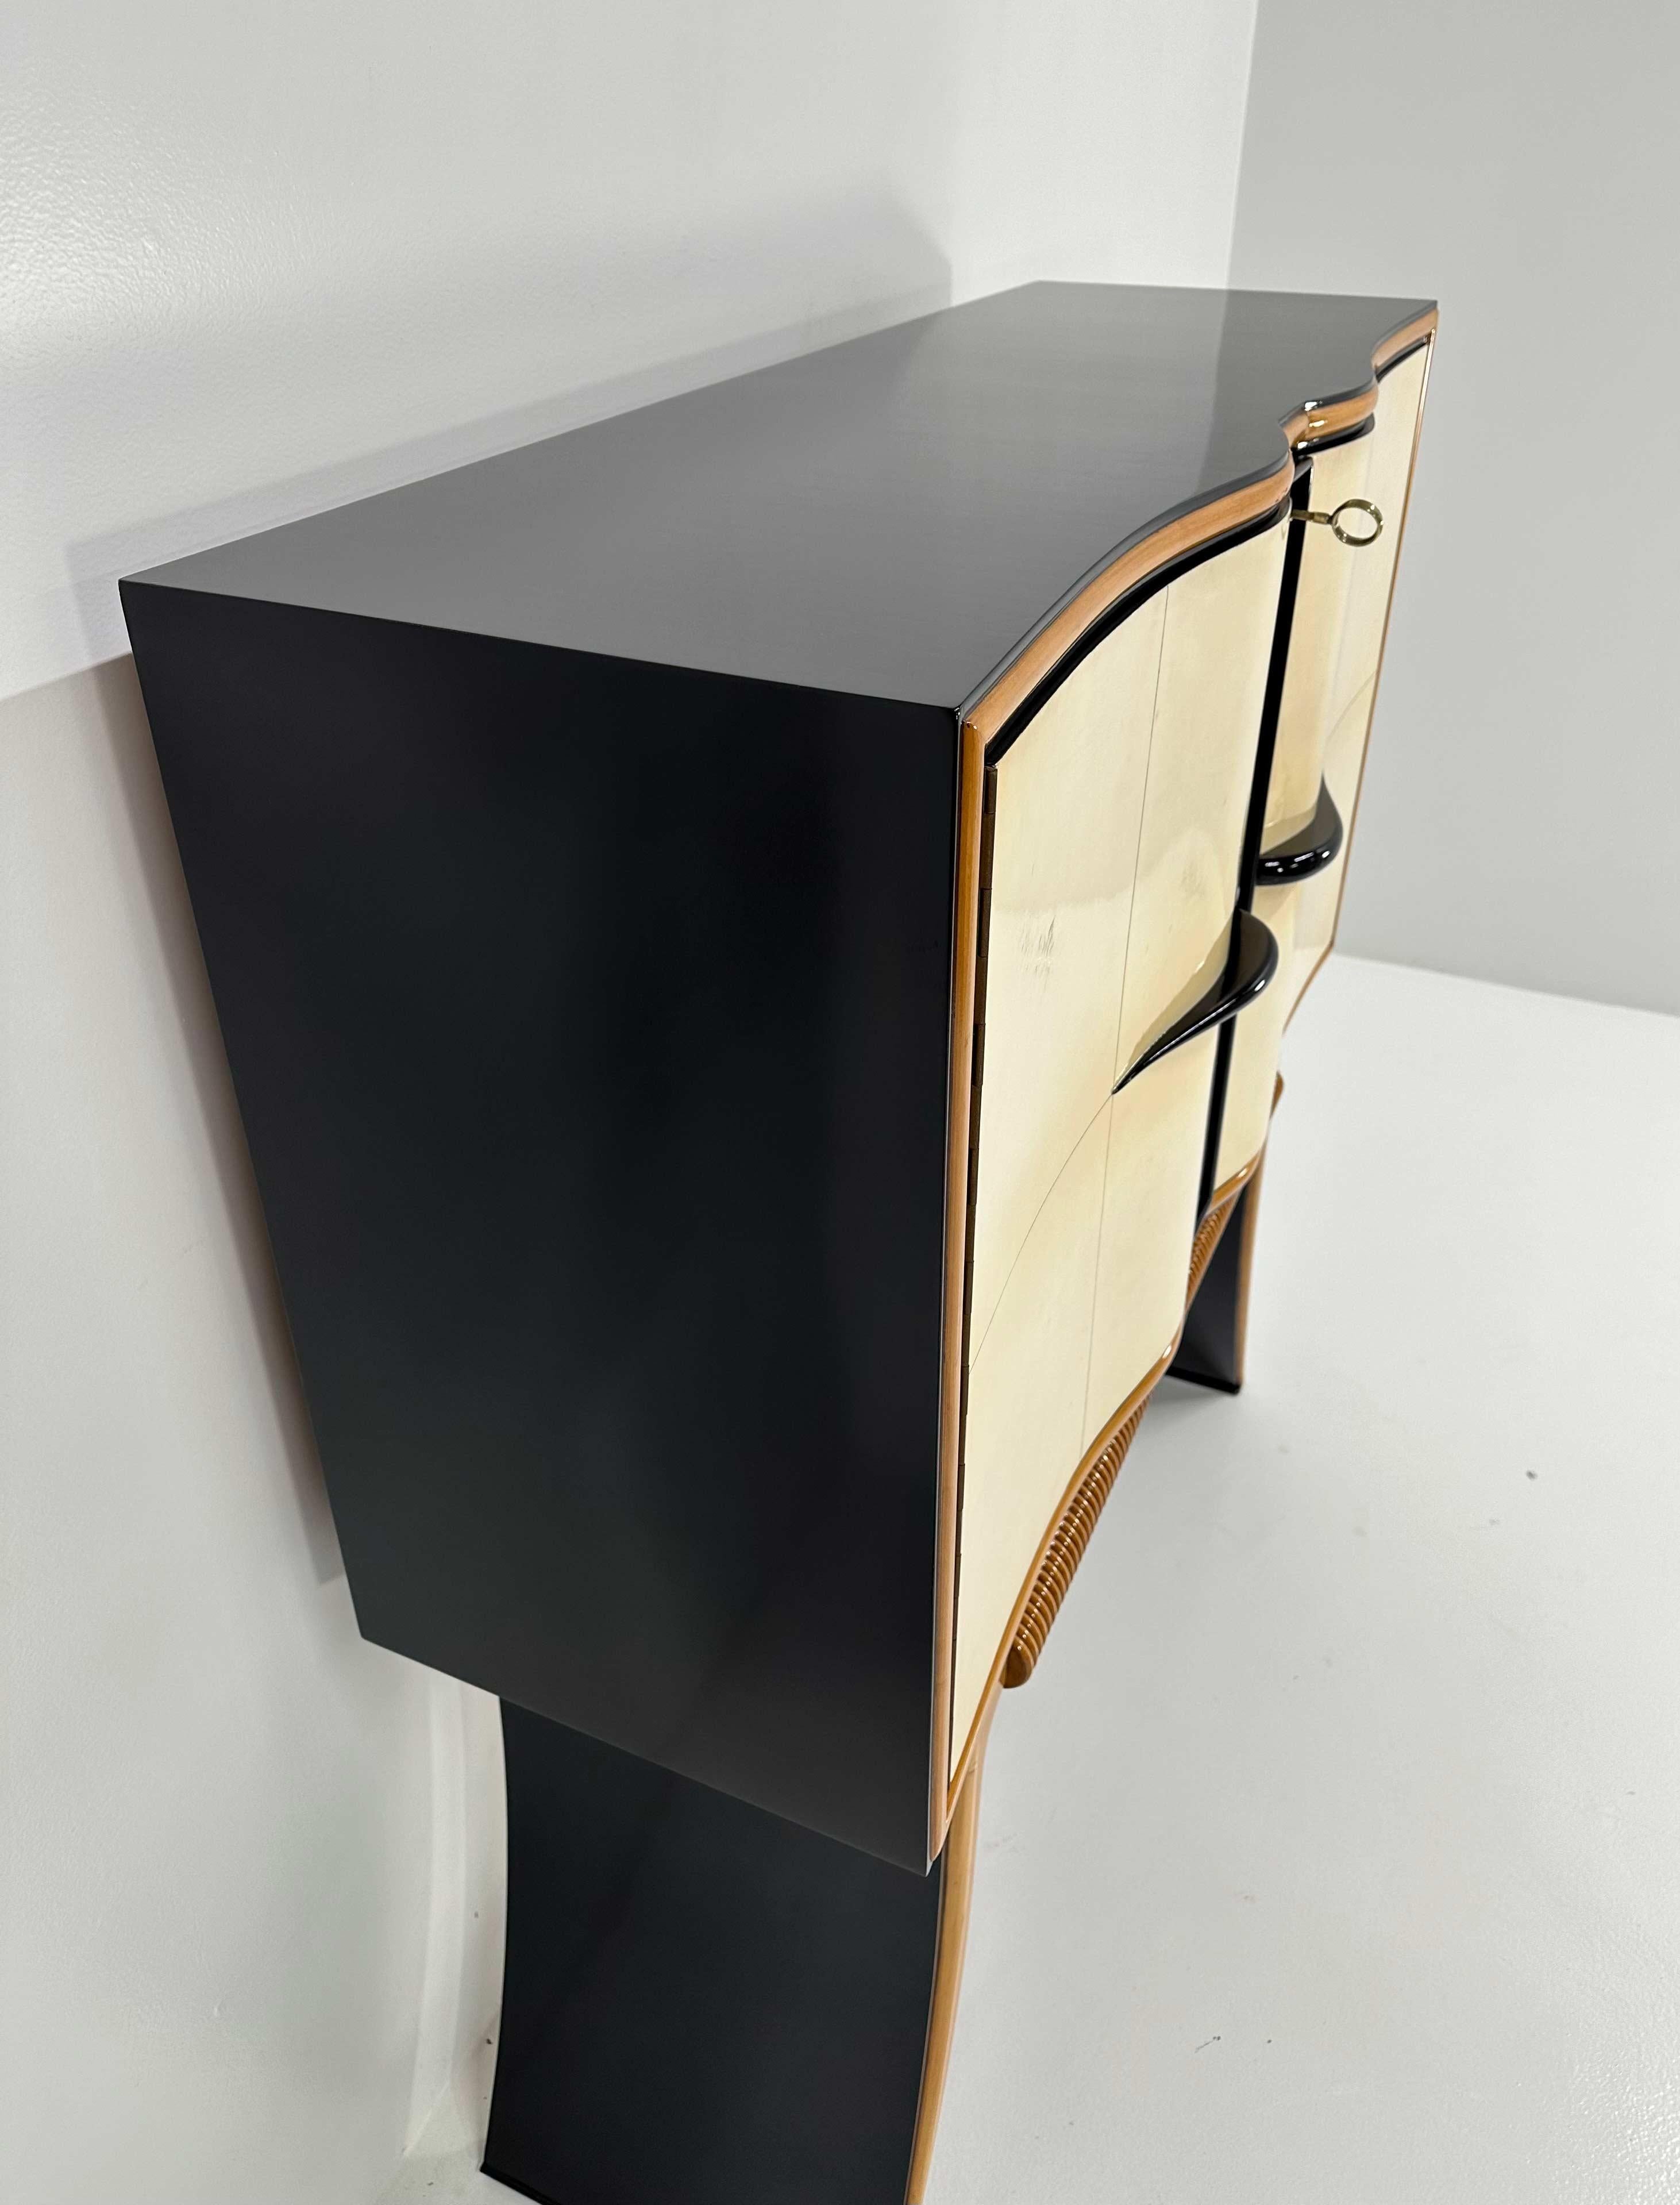 Italian Art Deco Paolo Buffa Parchment, Maple, Black, Mirrors Bar Cabinet, 40s For Sale 4